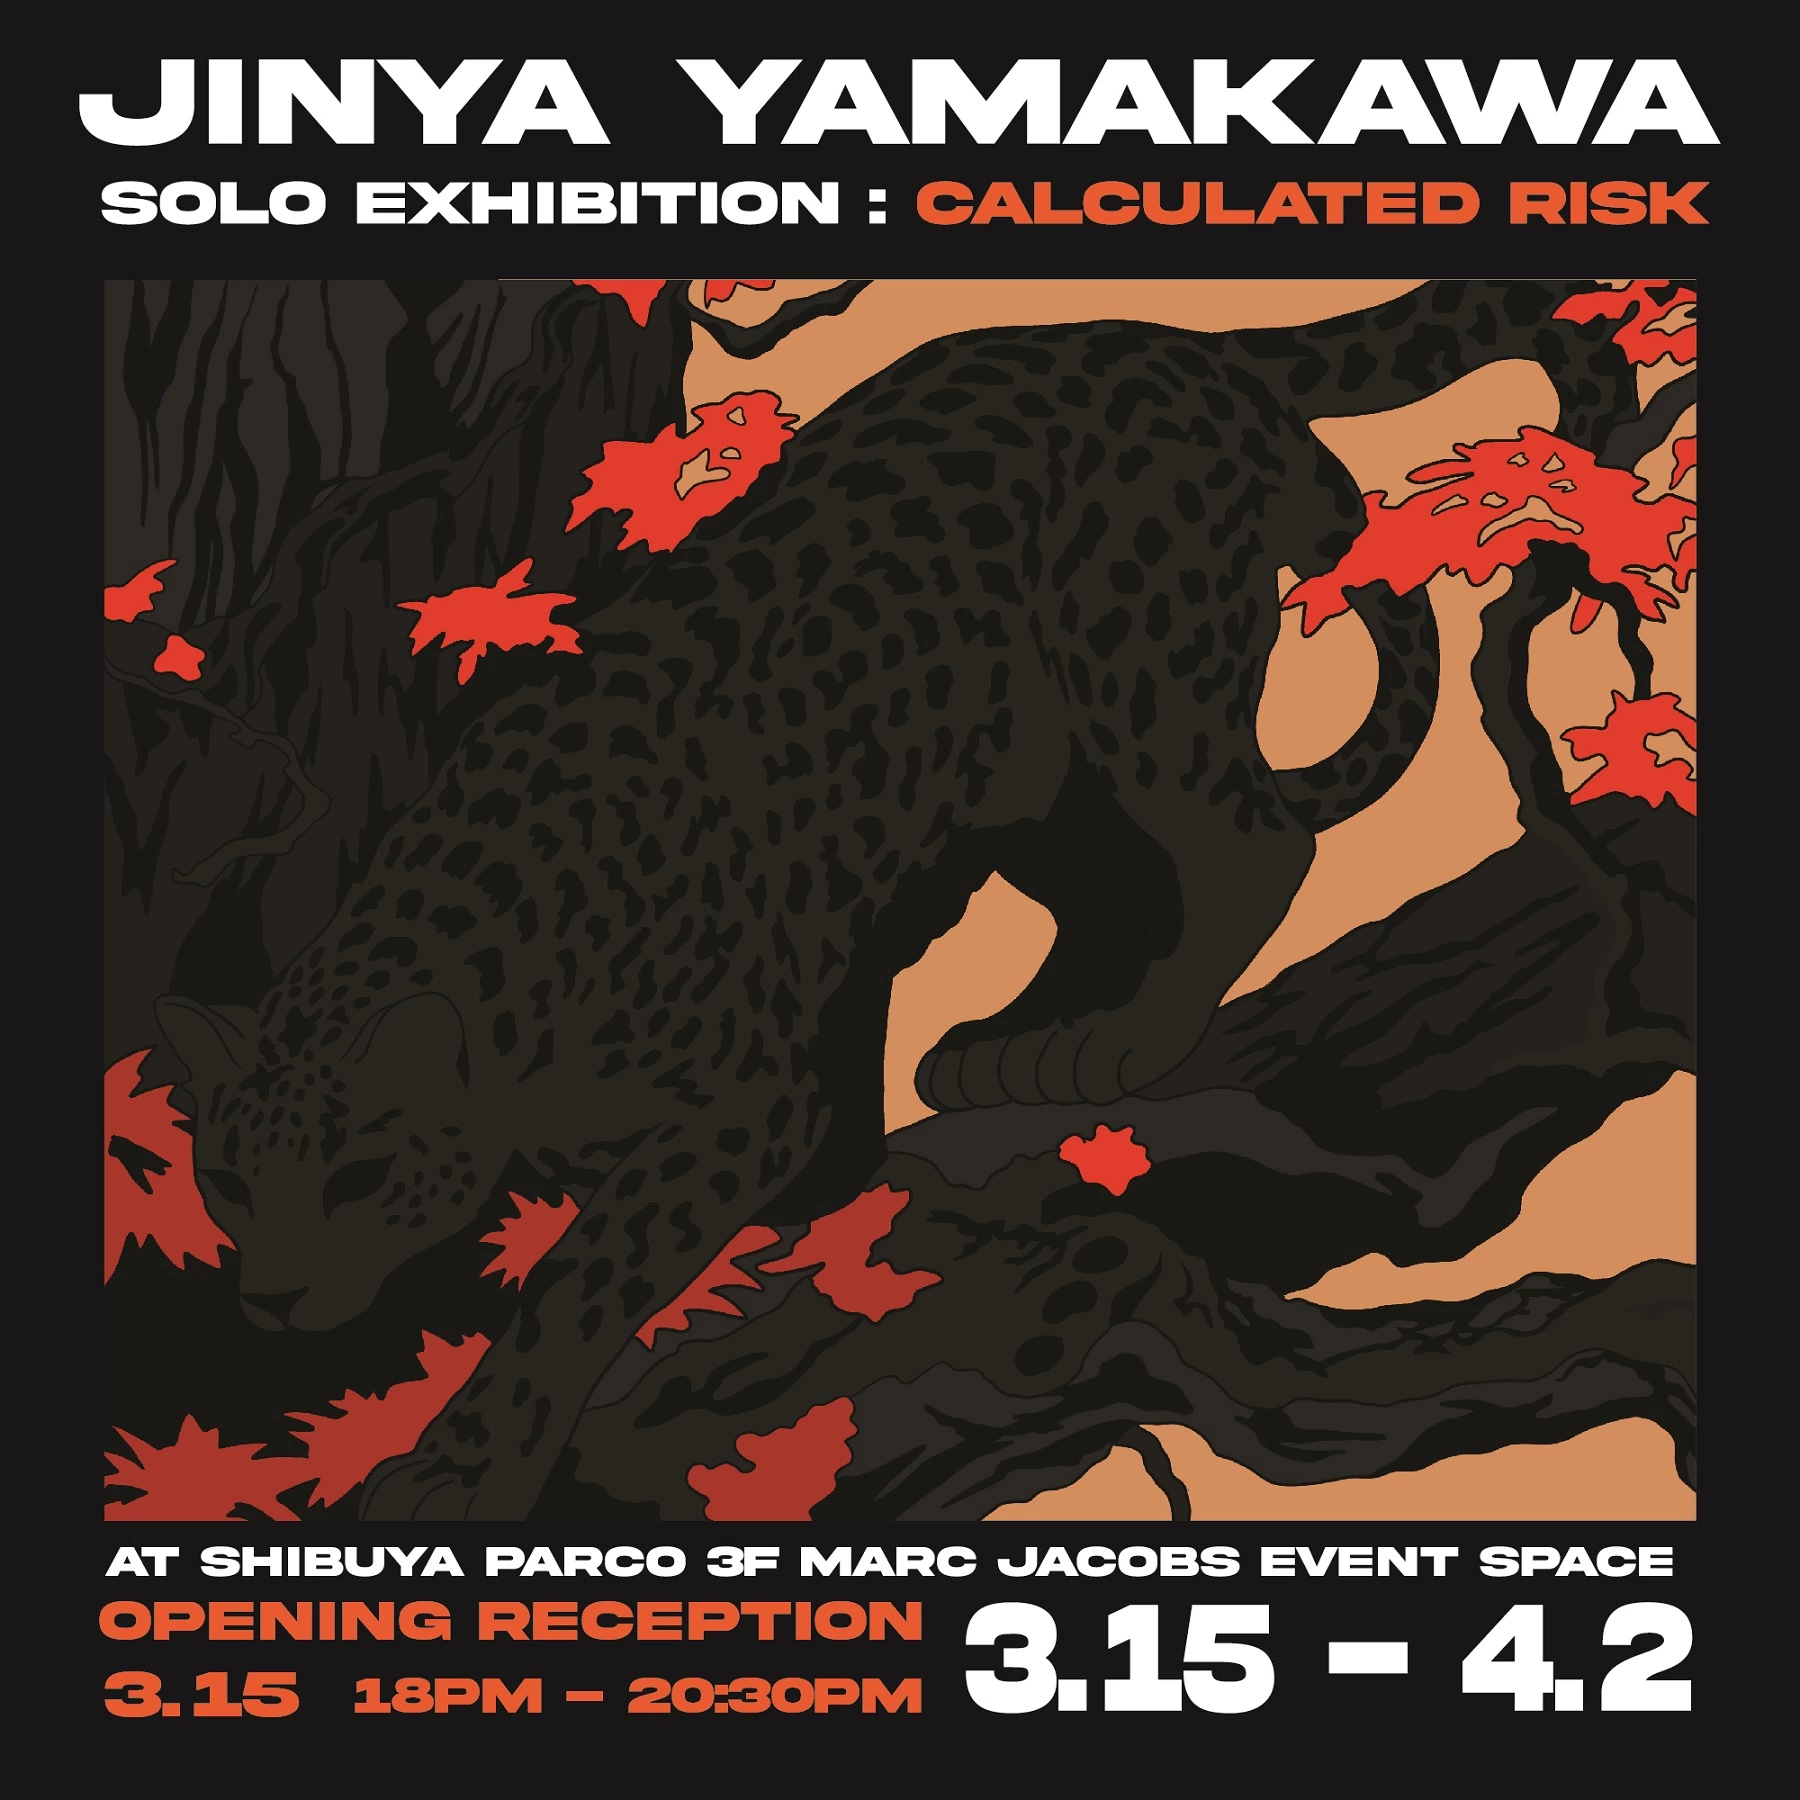 JINYA YAMAKWA SOLO EXHIBITION: CALCULATED RISK